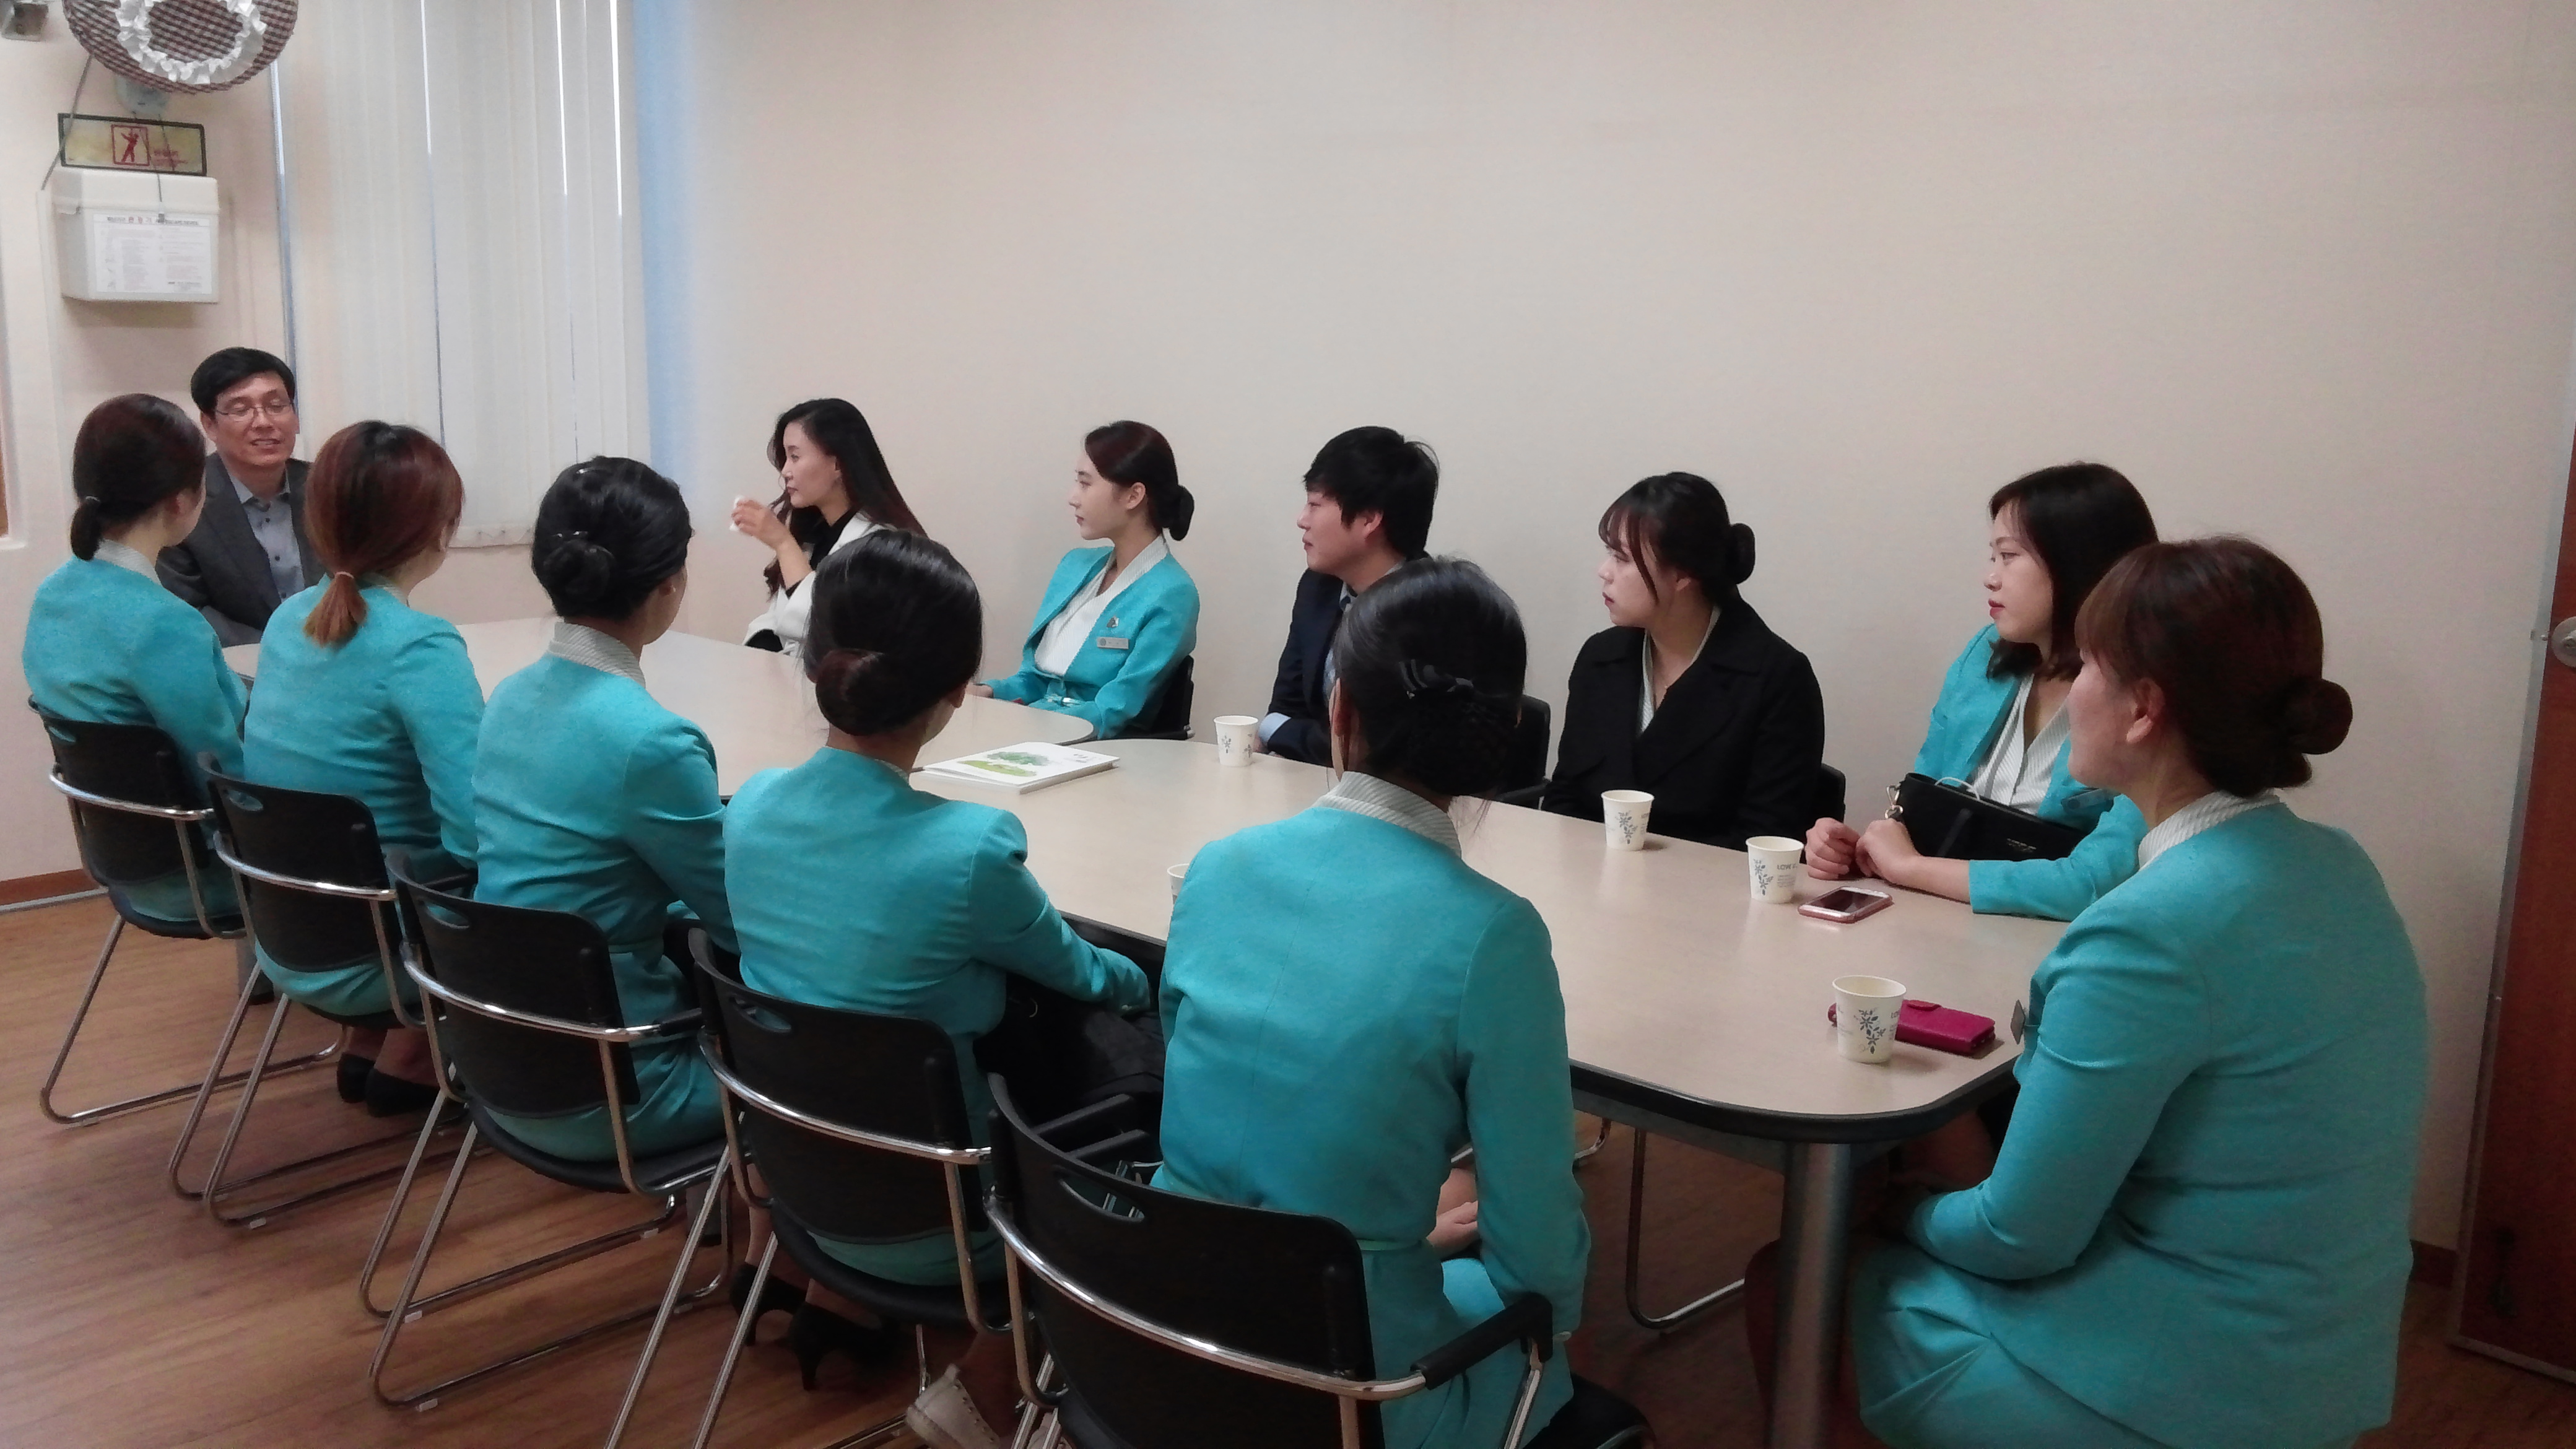 박상호 관장님과 한국호텔전문학교 학생들이 이야기를 나누고 있는 사진